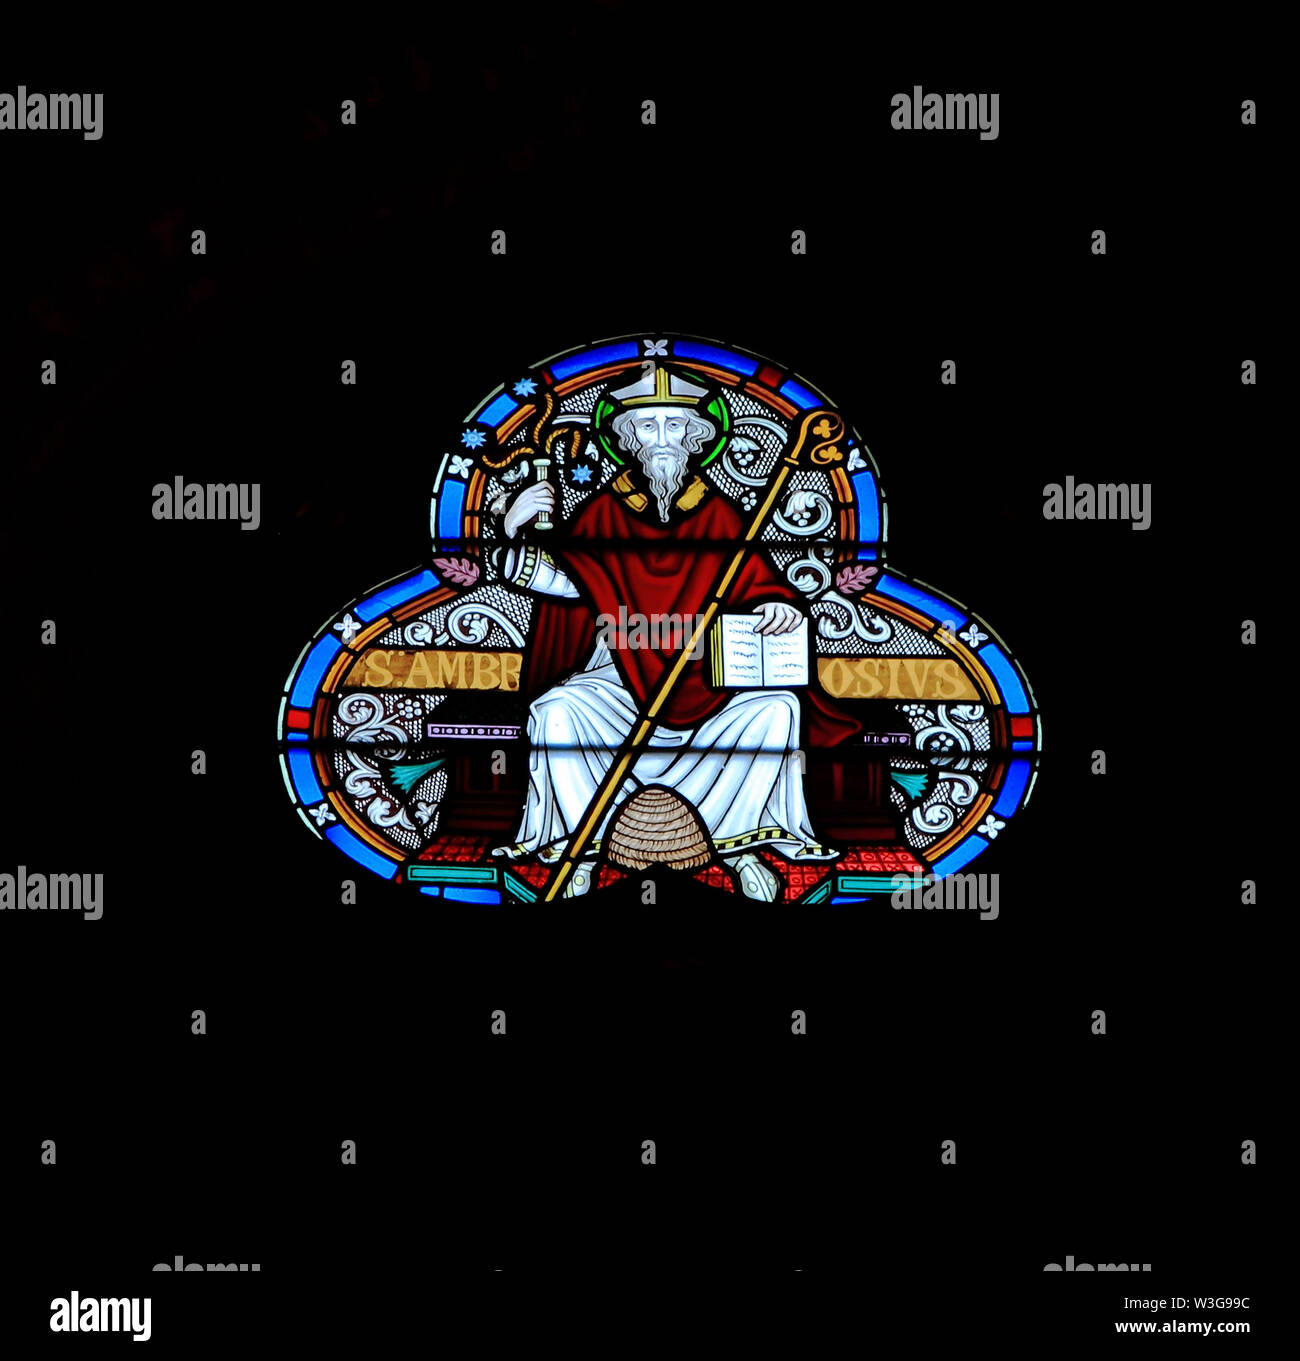 Sant'Ambrogio, beehive a piedi, flagello in mano, vetrata, da Federico Preedy, xix secolo vetro, Old Hunstanton, Norfolk, Inghilterra 2 Foto Stock